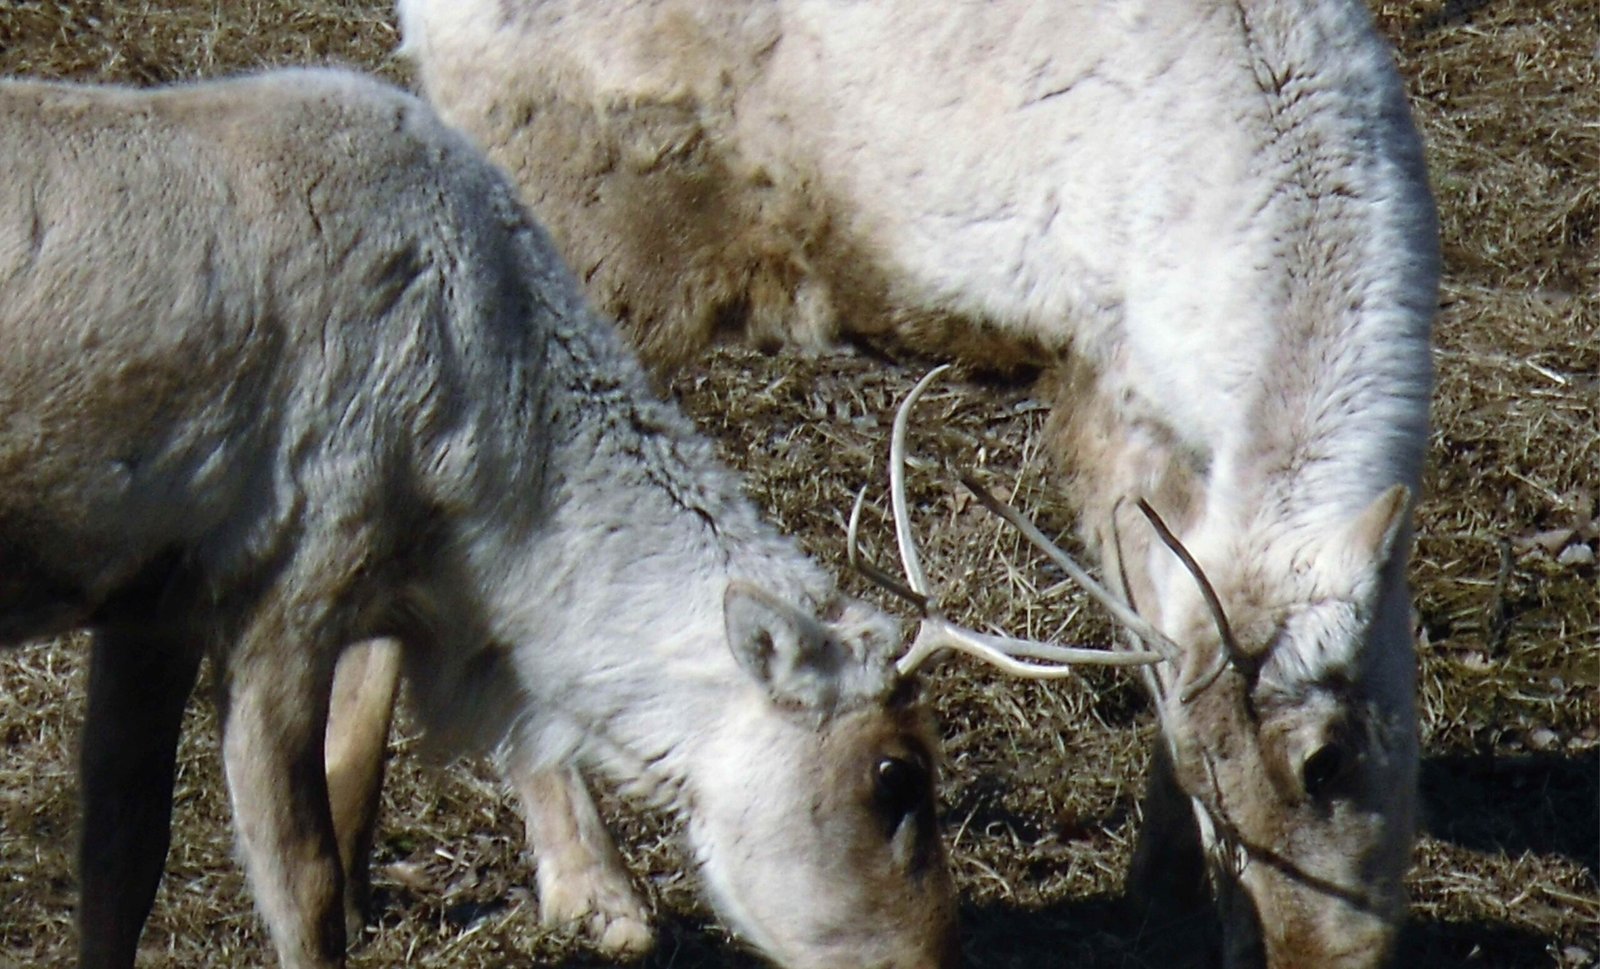 The function of antlers in female reindeer